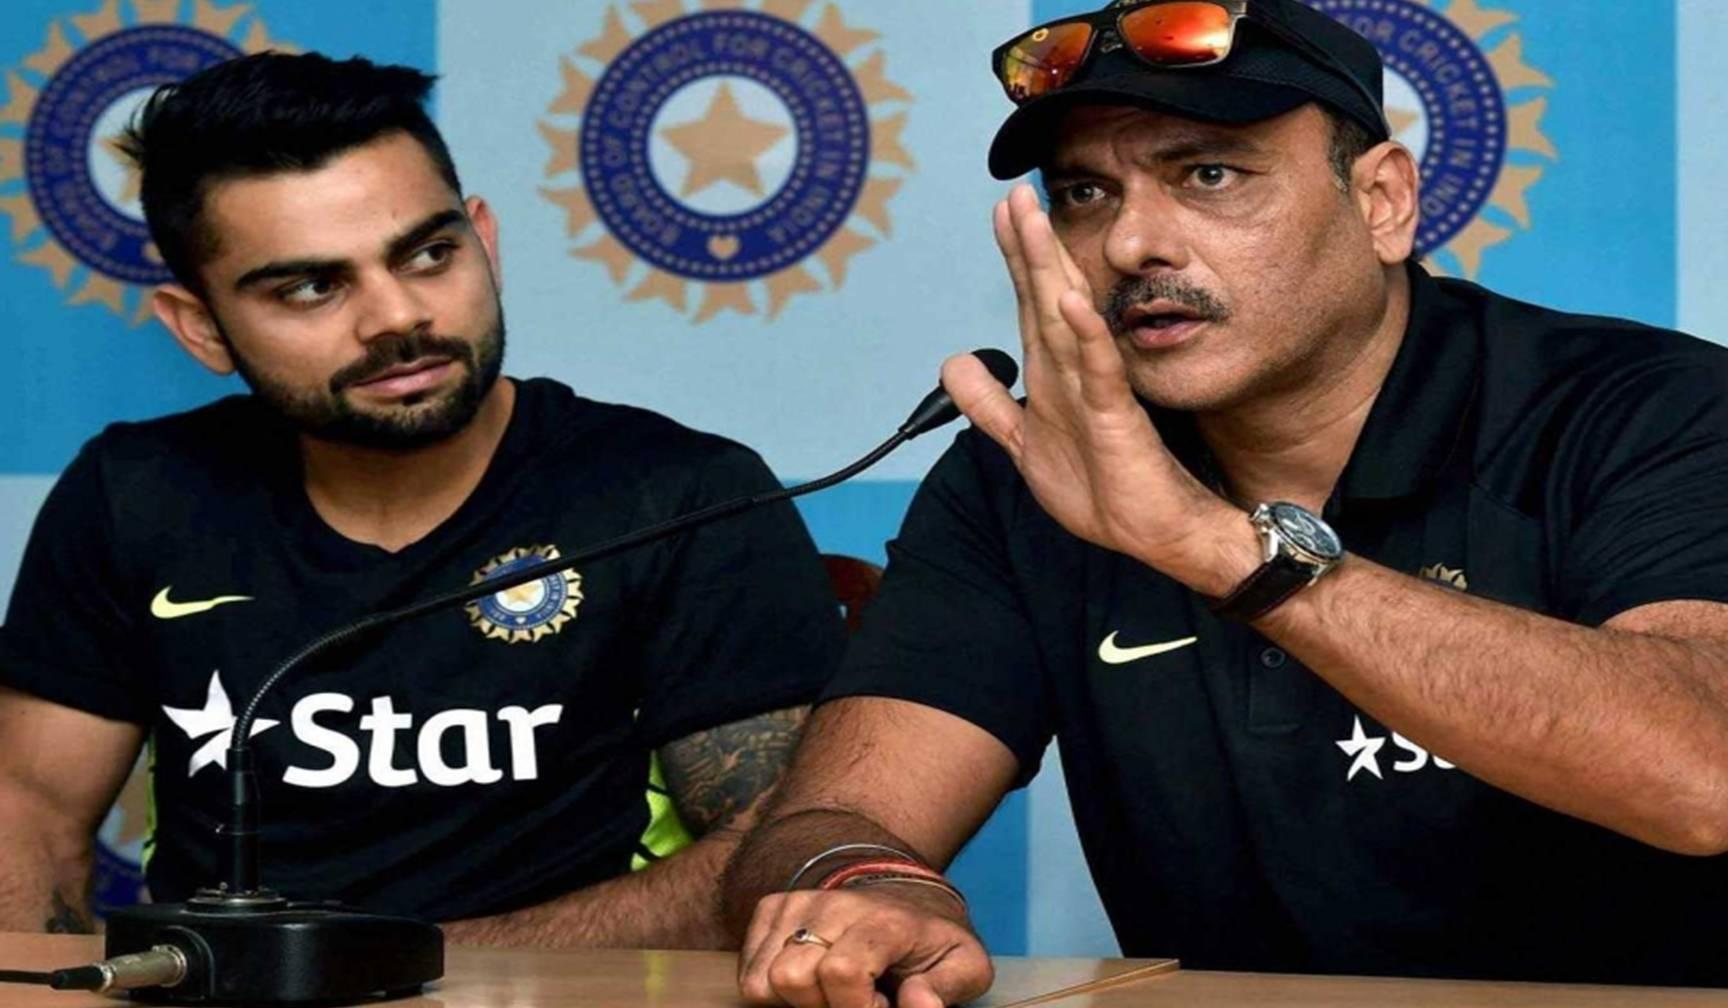 टीम इंडिया का कोच बनते ही रवि शास्त्री ने विराट कोहली को कह दी है ये बात, क्रिकेट जगत में हलचल